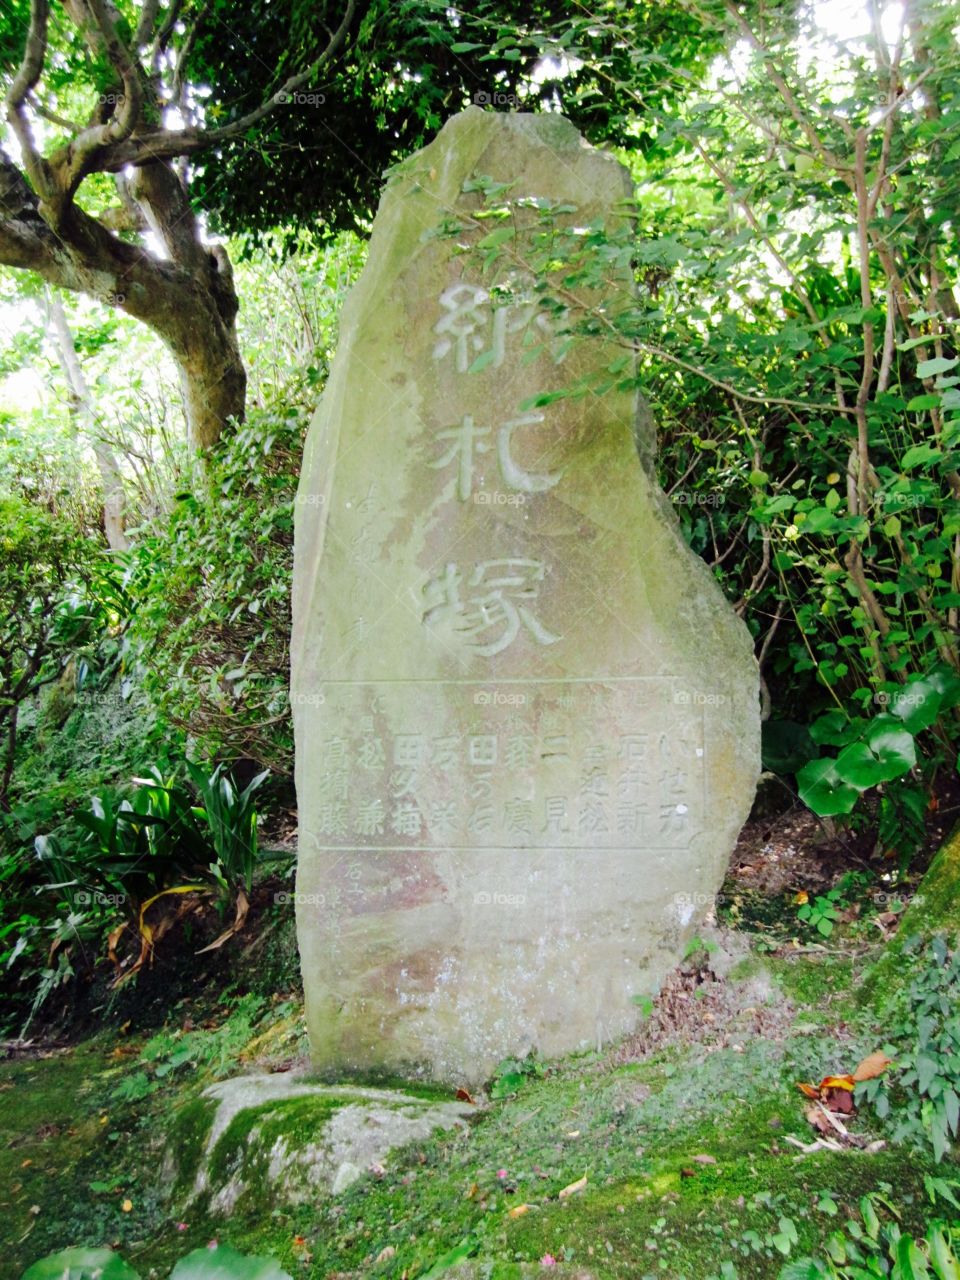 Written in stone 